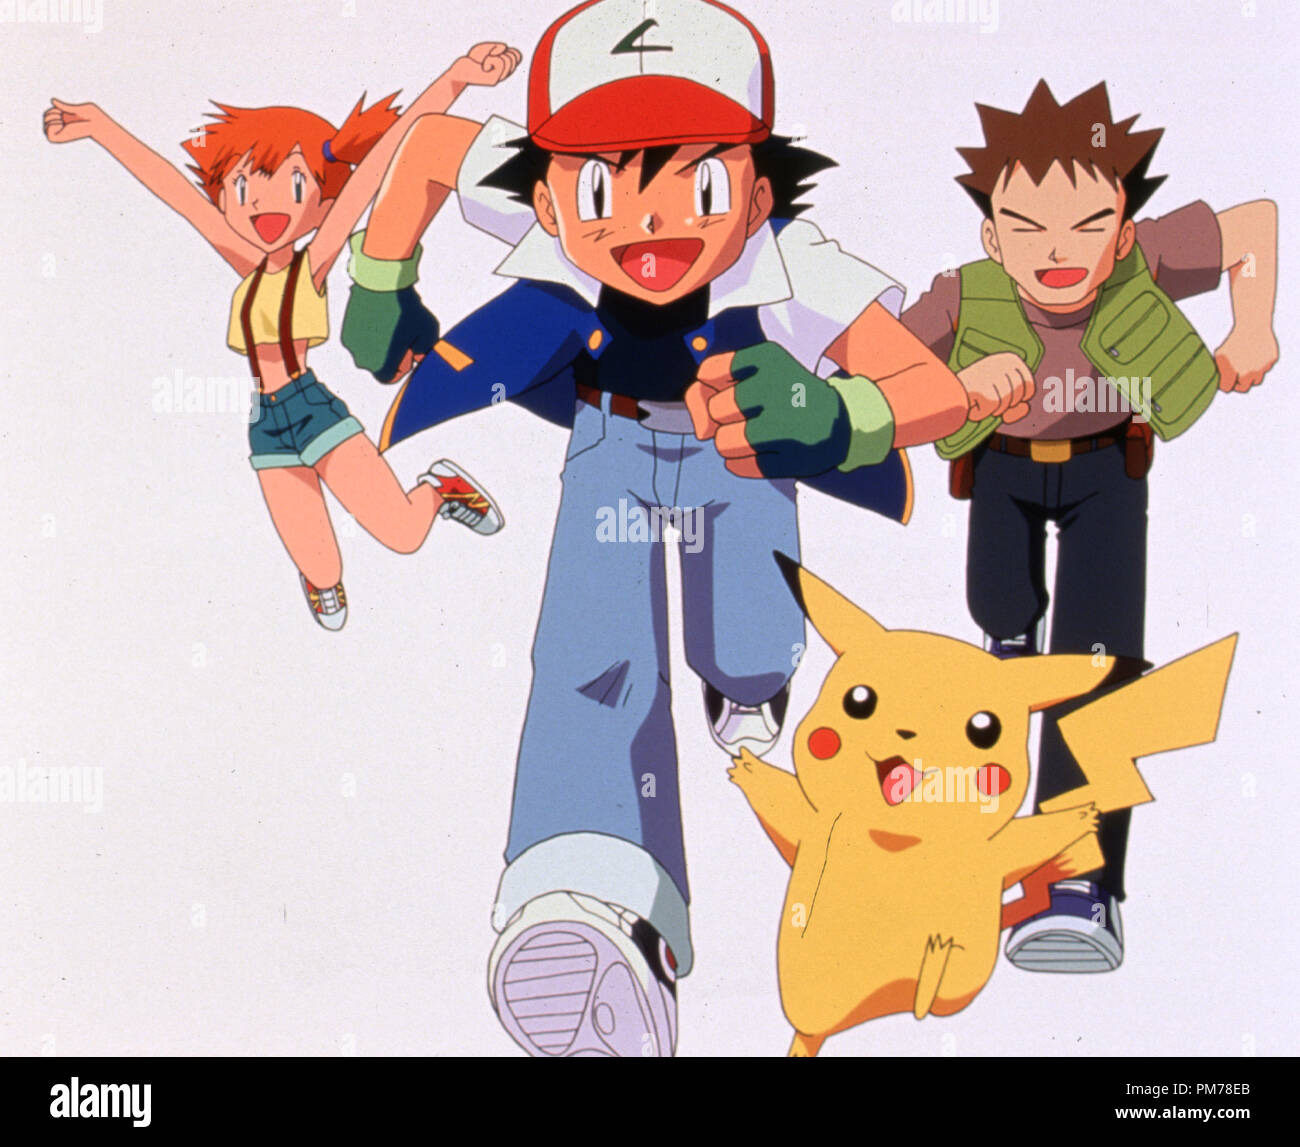 Photo du film de 'Pokemon' Misty, Ash, Pikachu, Brock © 1998 Warner Bros. Référence #  30996312THA pour un usage éditorial uniquement - Tous droits réservés Banque D'Images